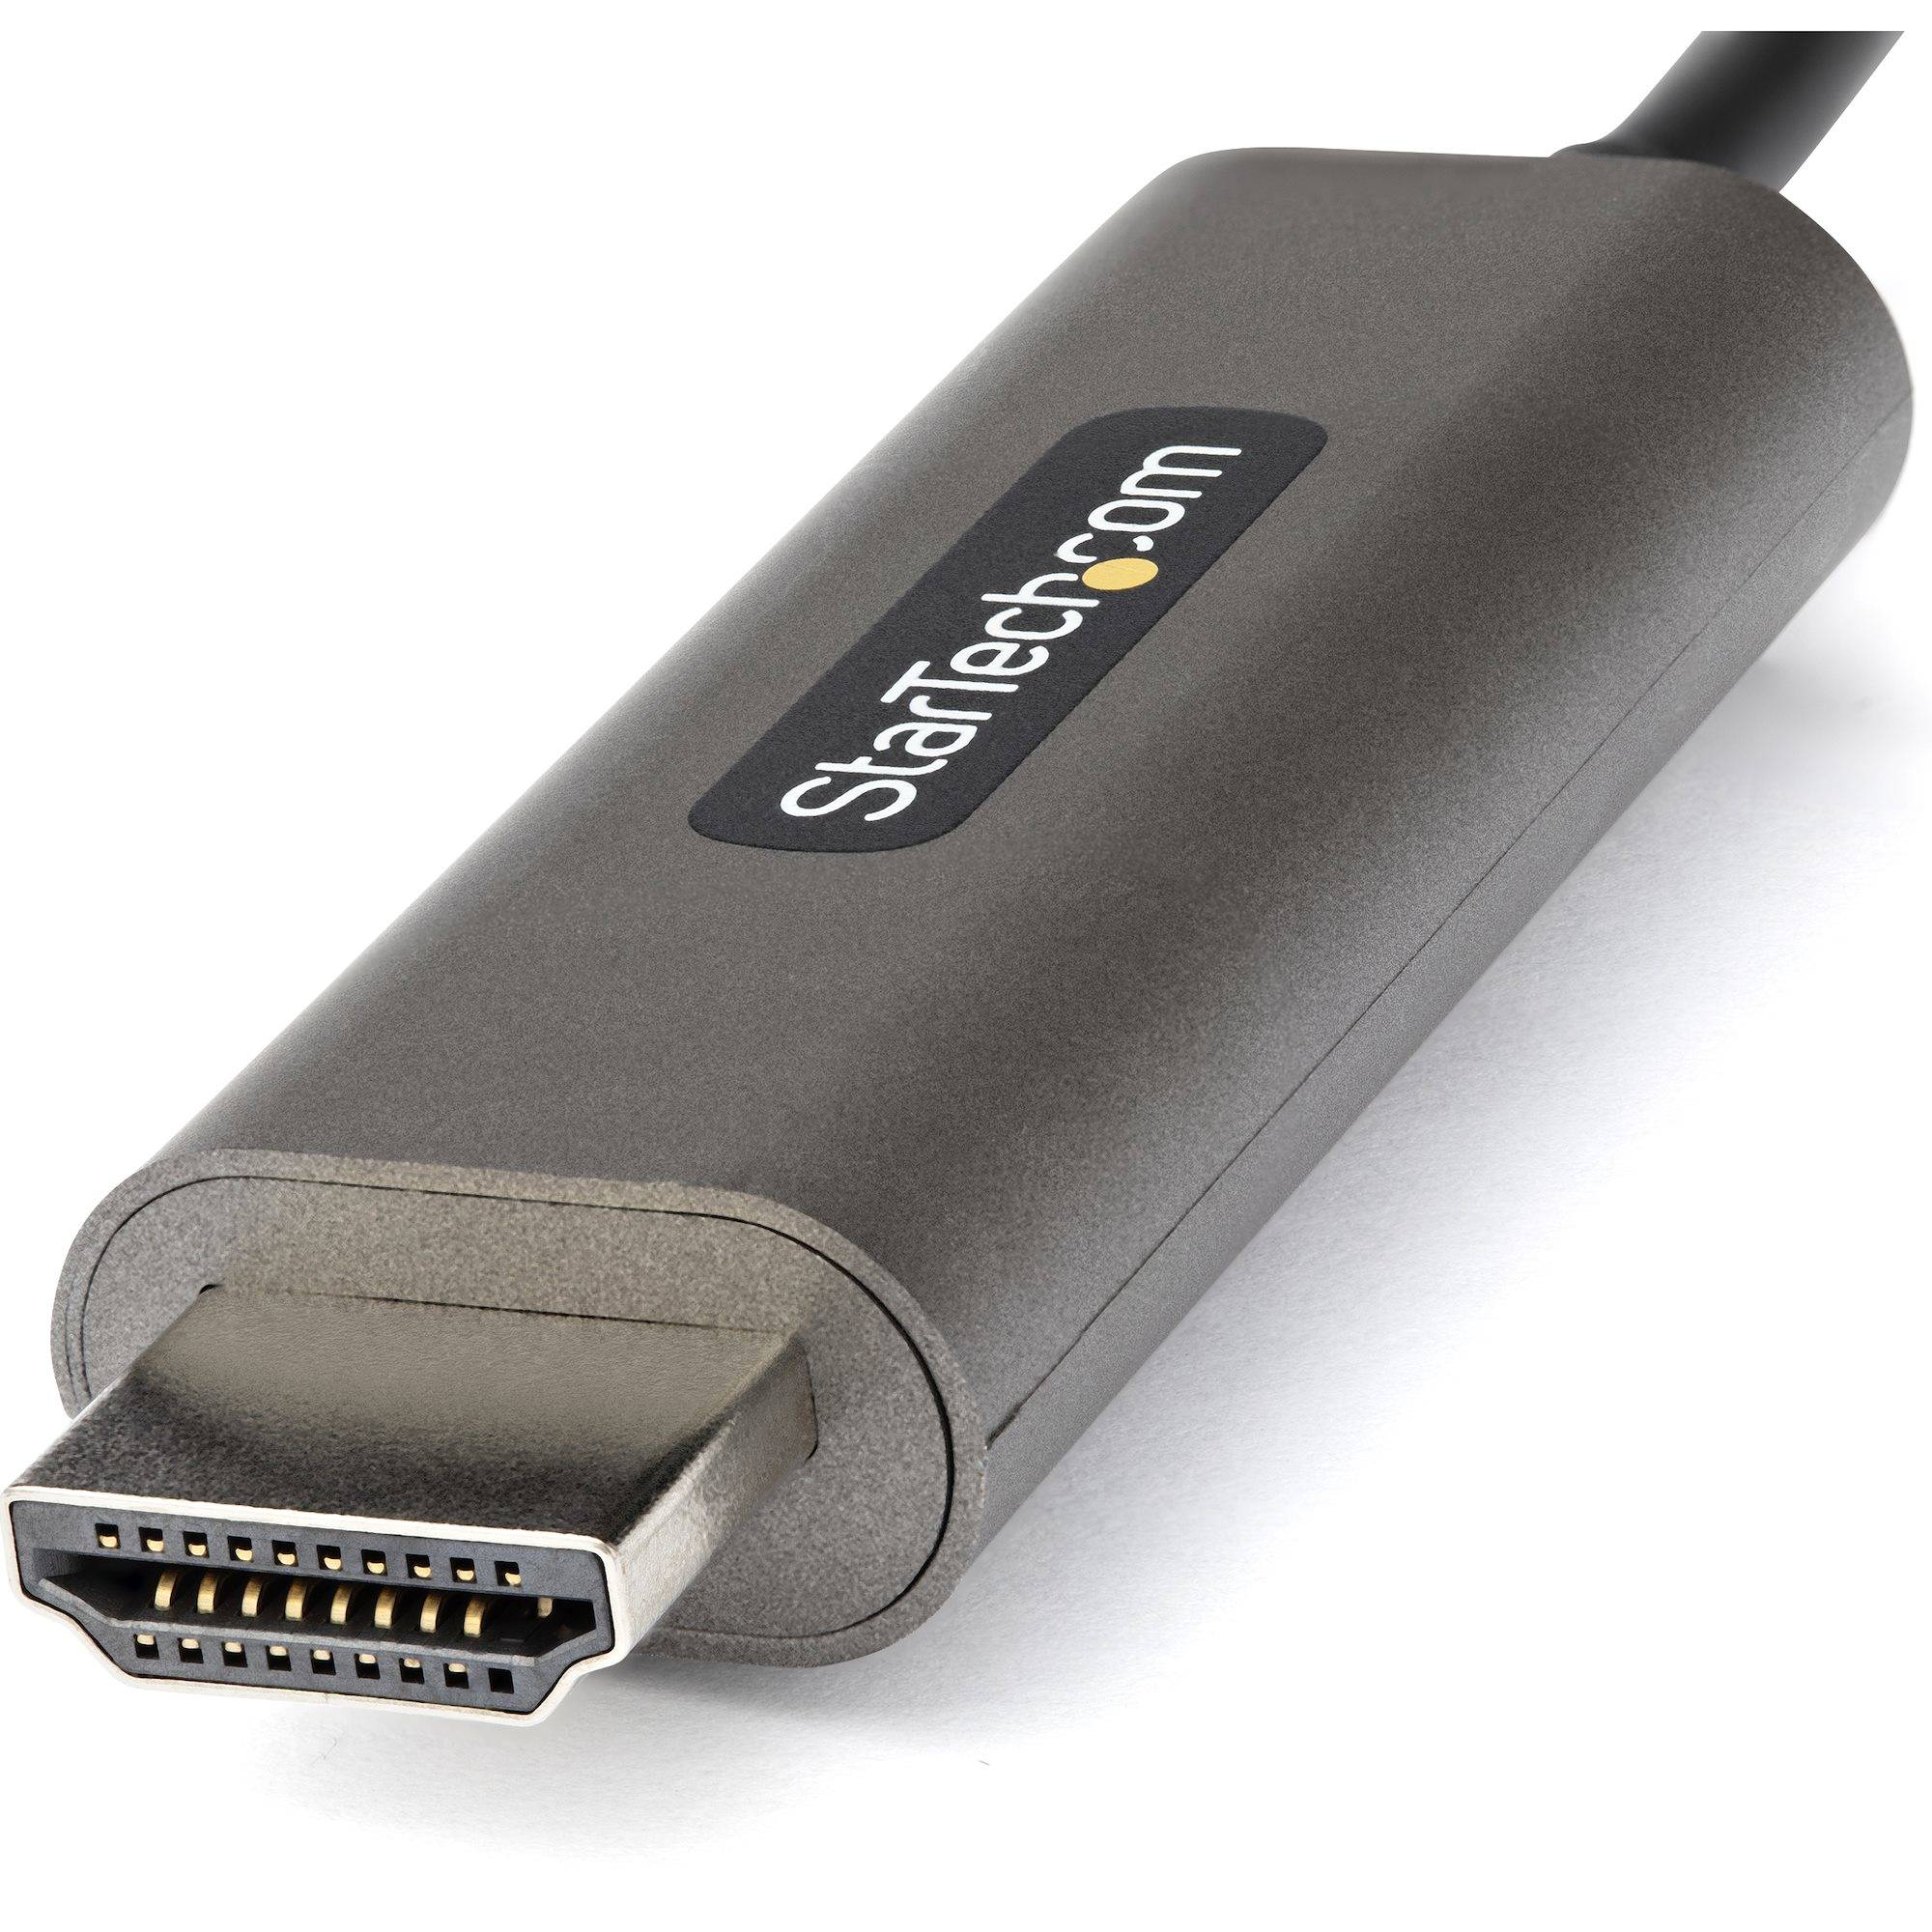 Rca Informatique - image du produit : 3FT USB C TO HDMI CABLE 4K 60HZ WITH HDR10 - USB-C TO HDMI MONIT